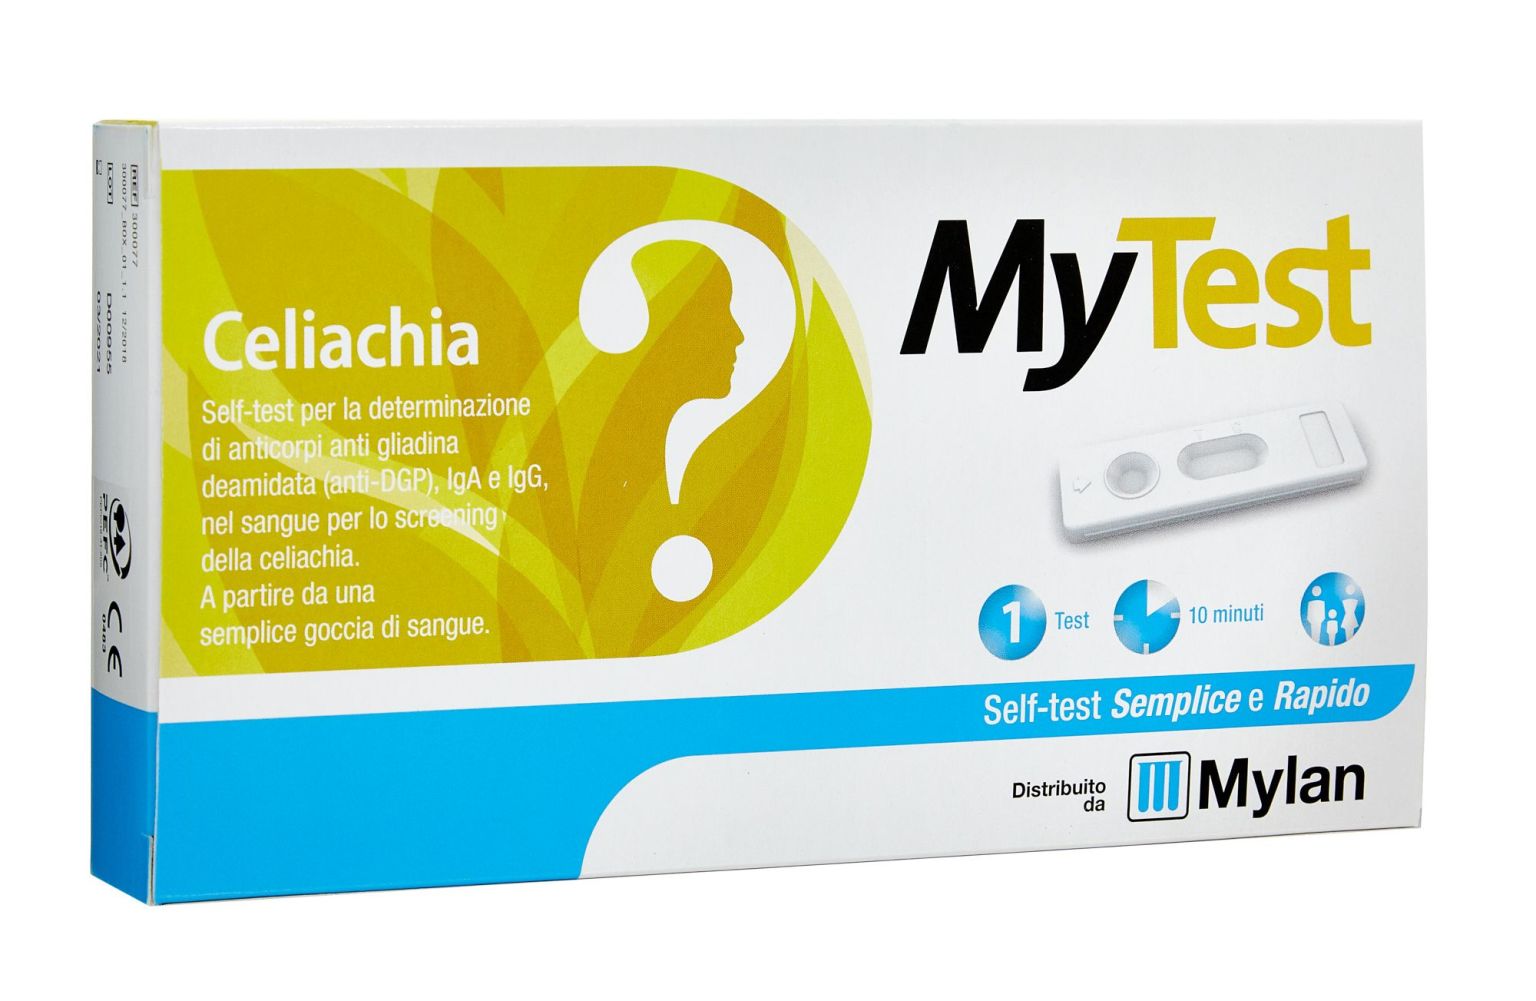 942423688 - MyTest Celiachia Kit Test rapido Celiachia - 4725443_2.jpg